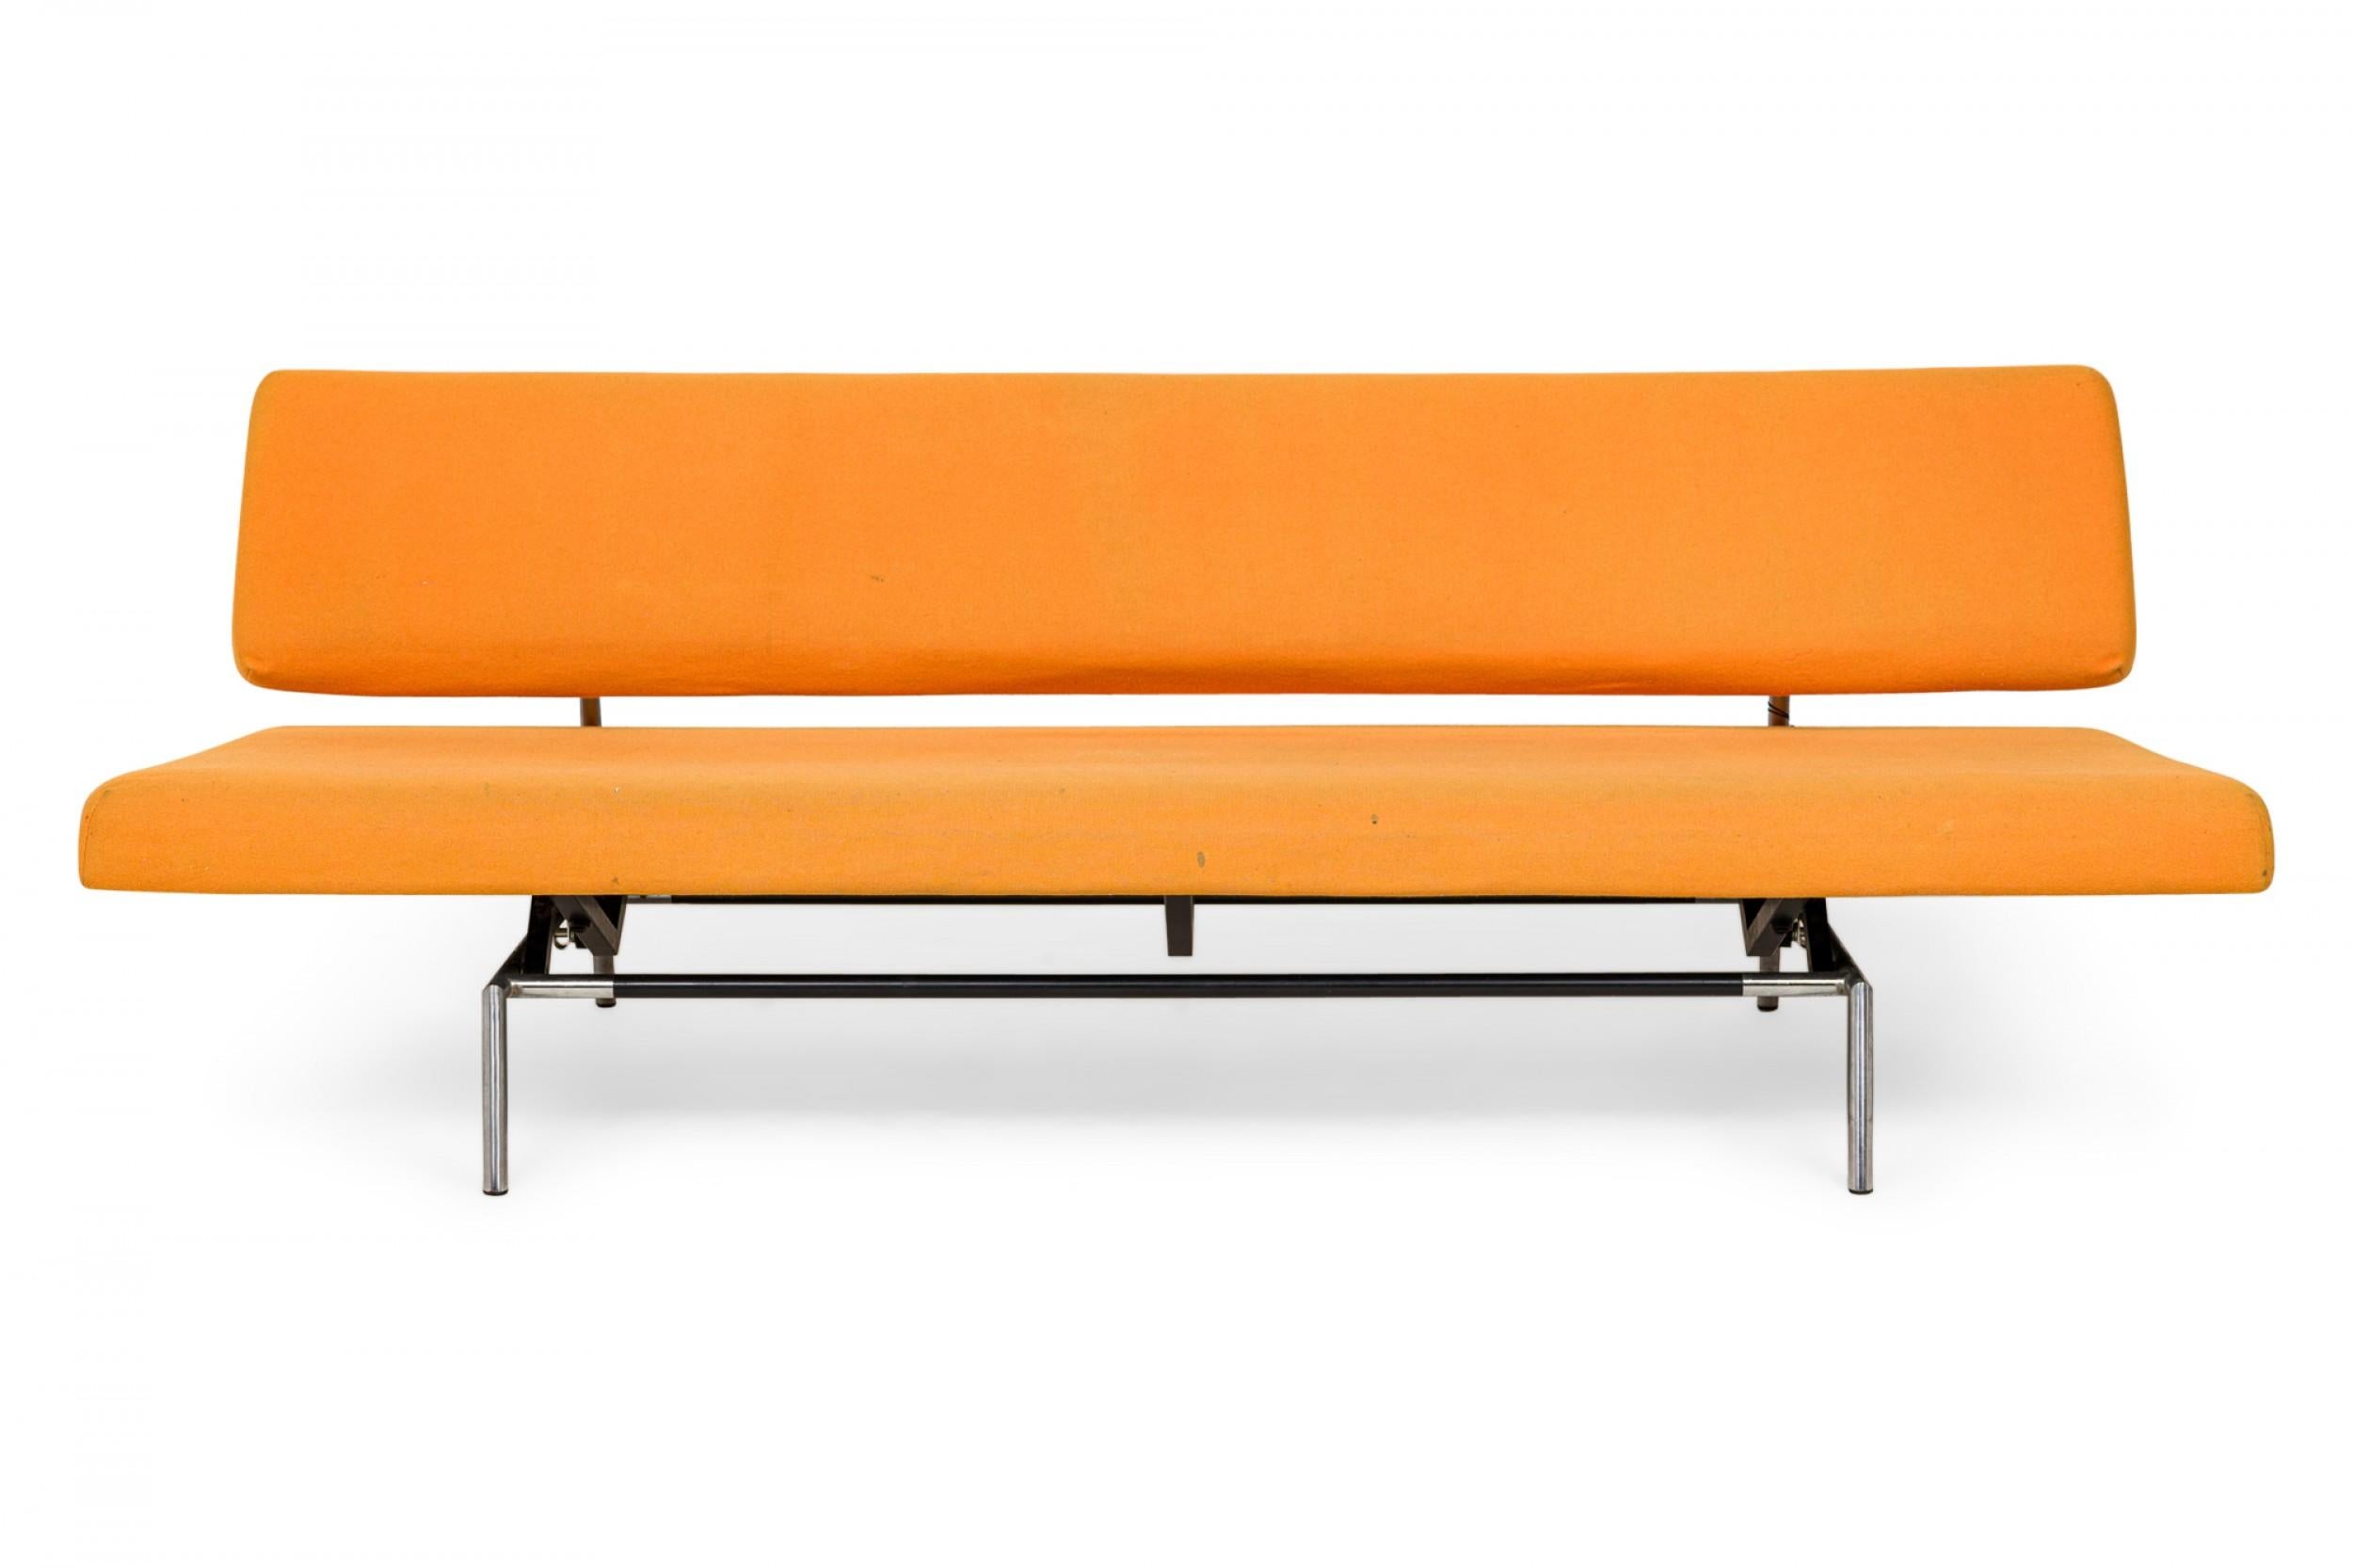 20th Century Martin Visser for Spectrum Orange Felt Convertible Sleeper Sofa (model BR02) For Sale